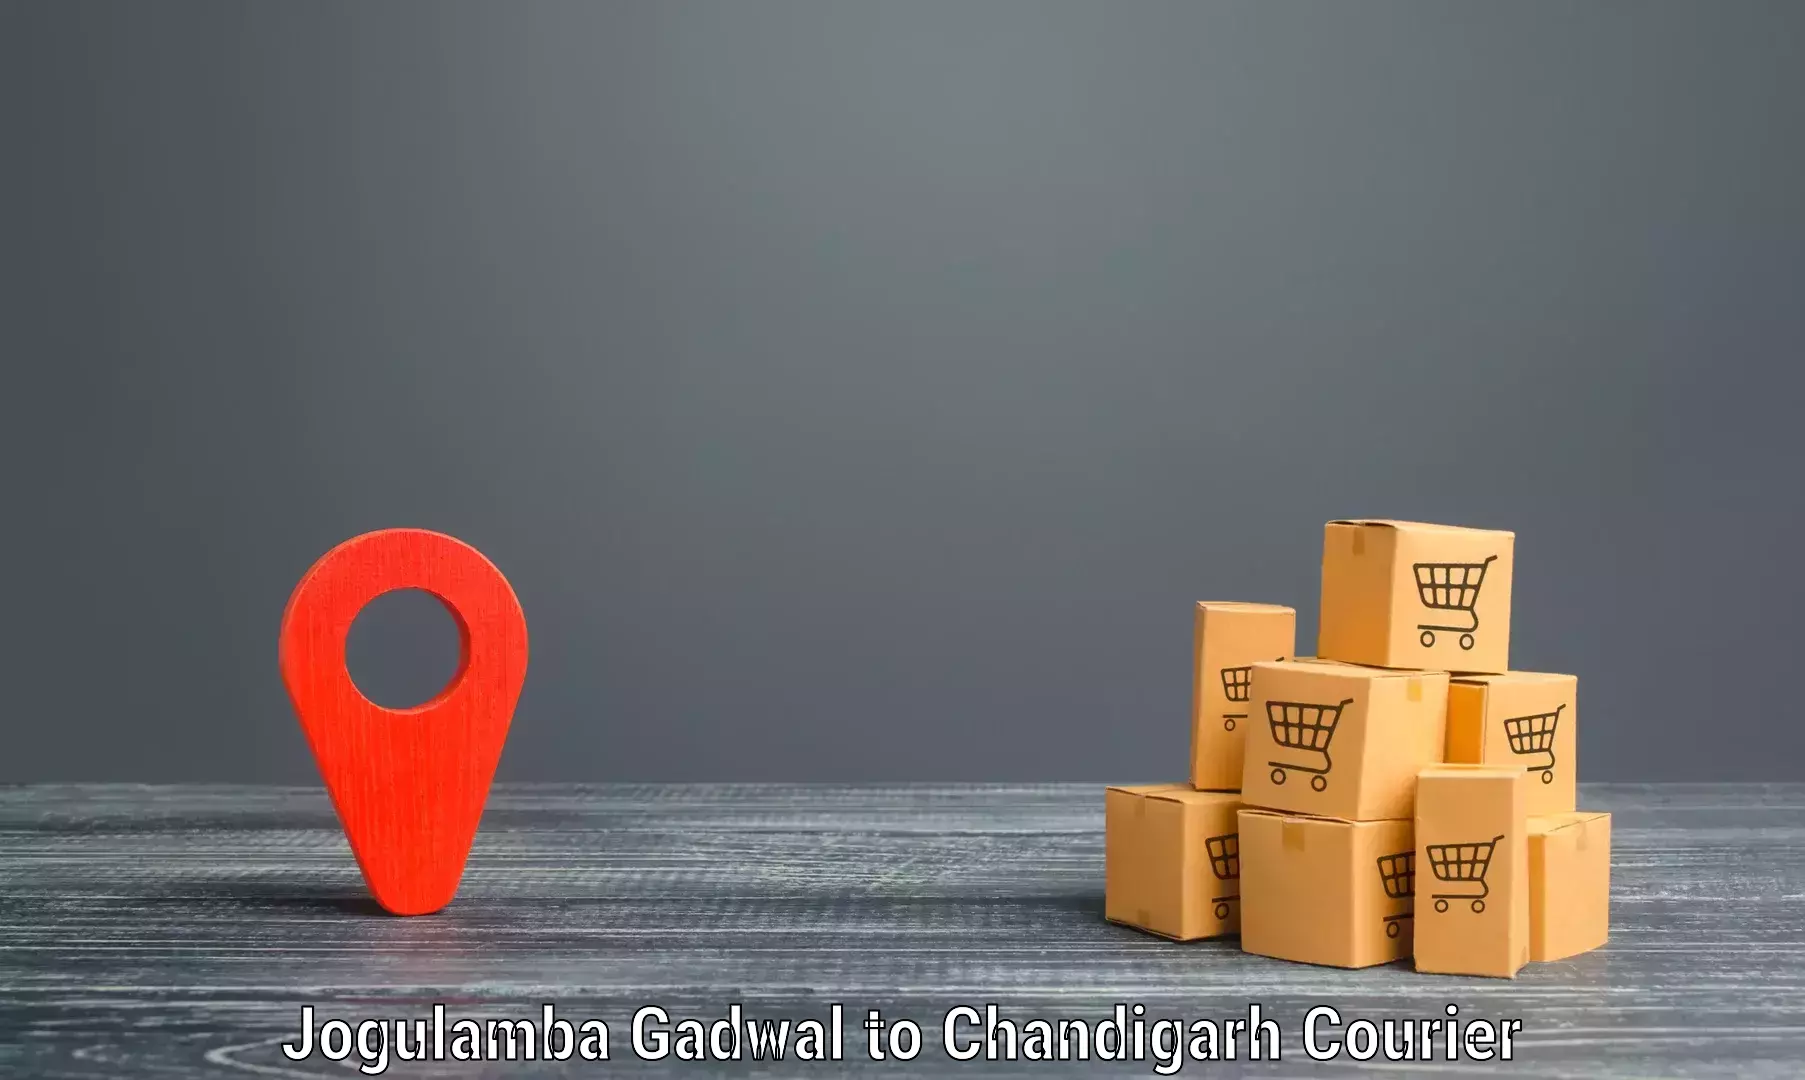 Express mail service Jogulamba Gadwal to Chandigarh